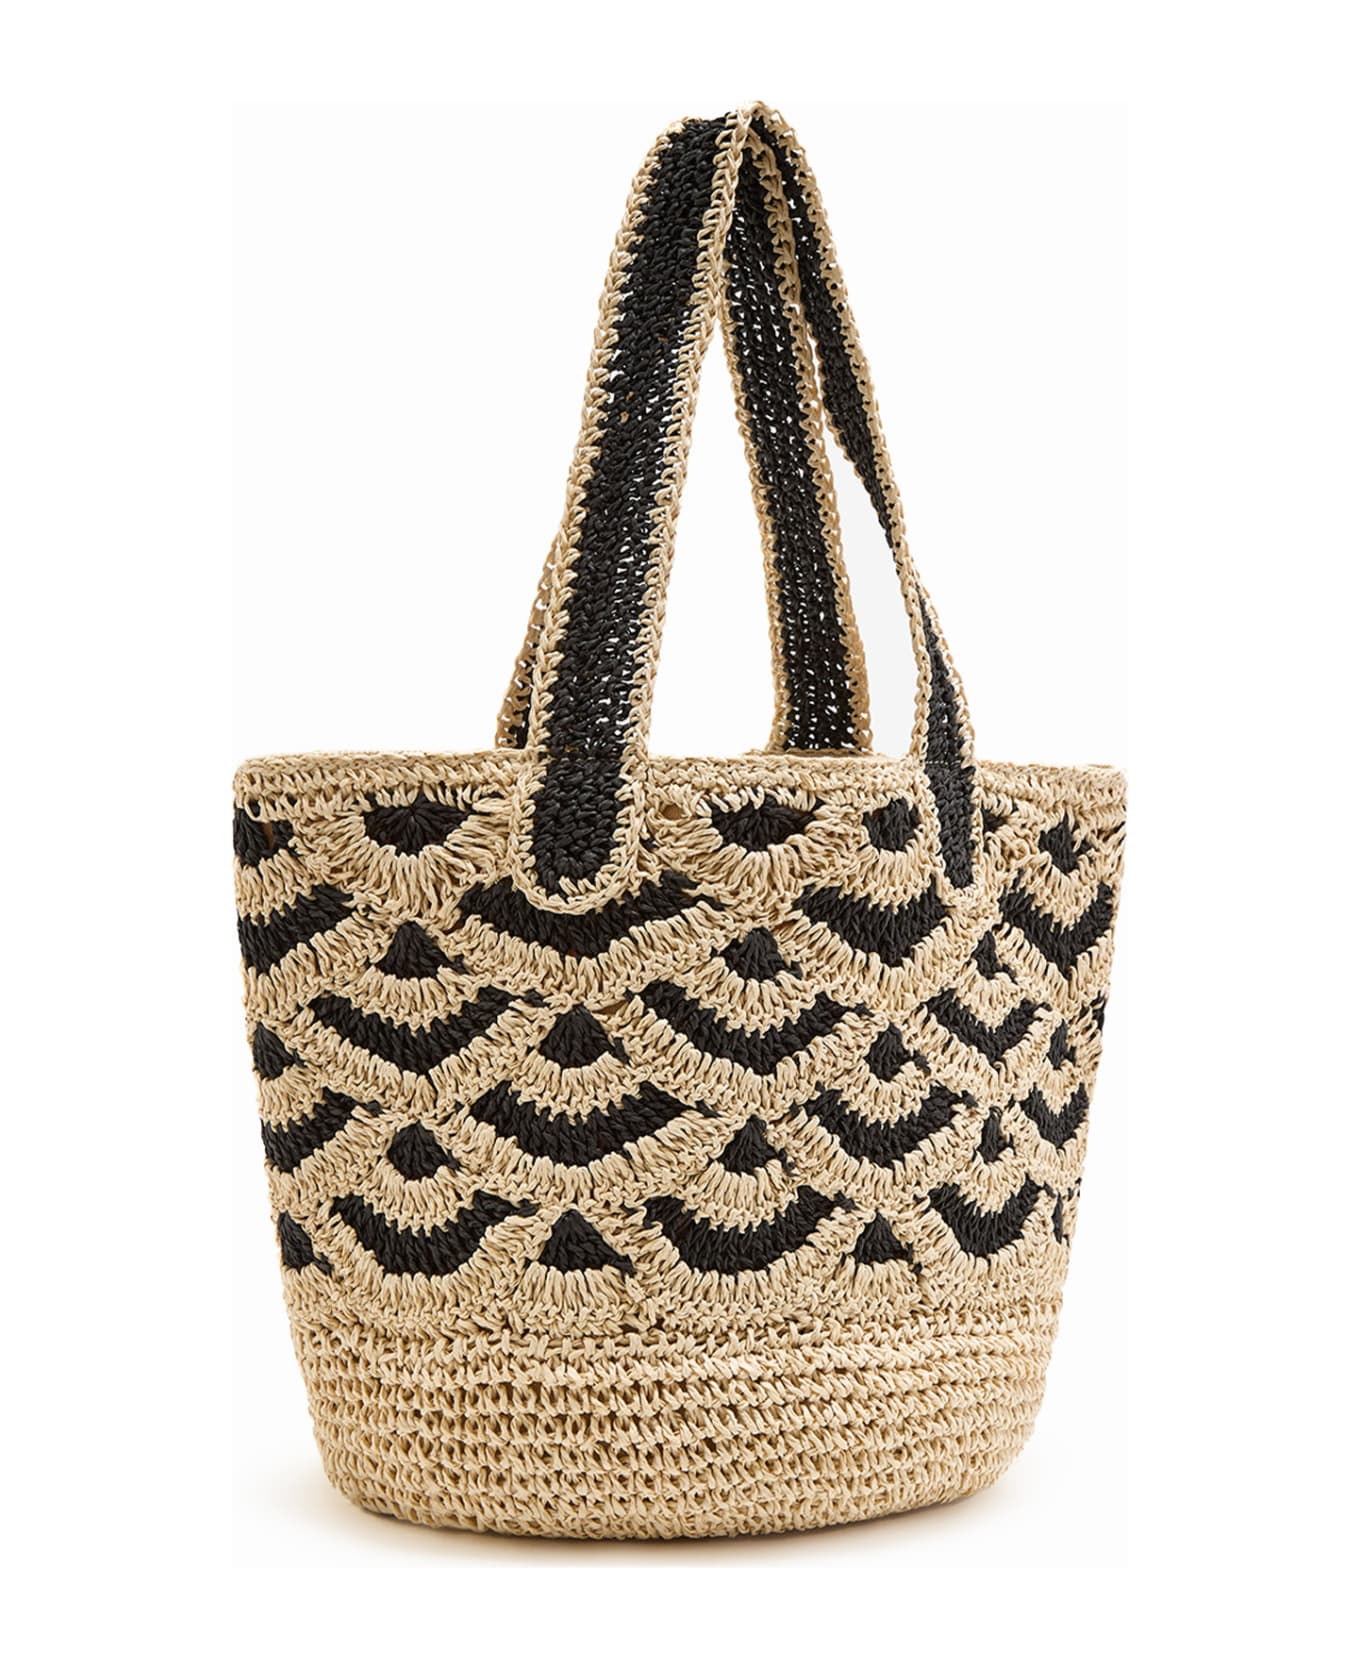 Malìparmi Shopping Bag In Hand-woven Two-tone Raffia - BEIGE/NERO